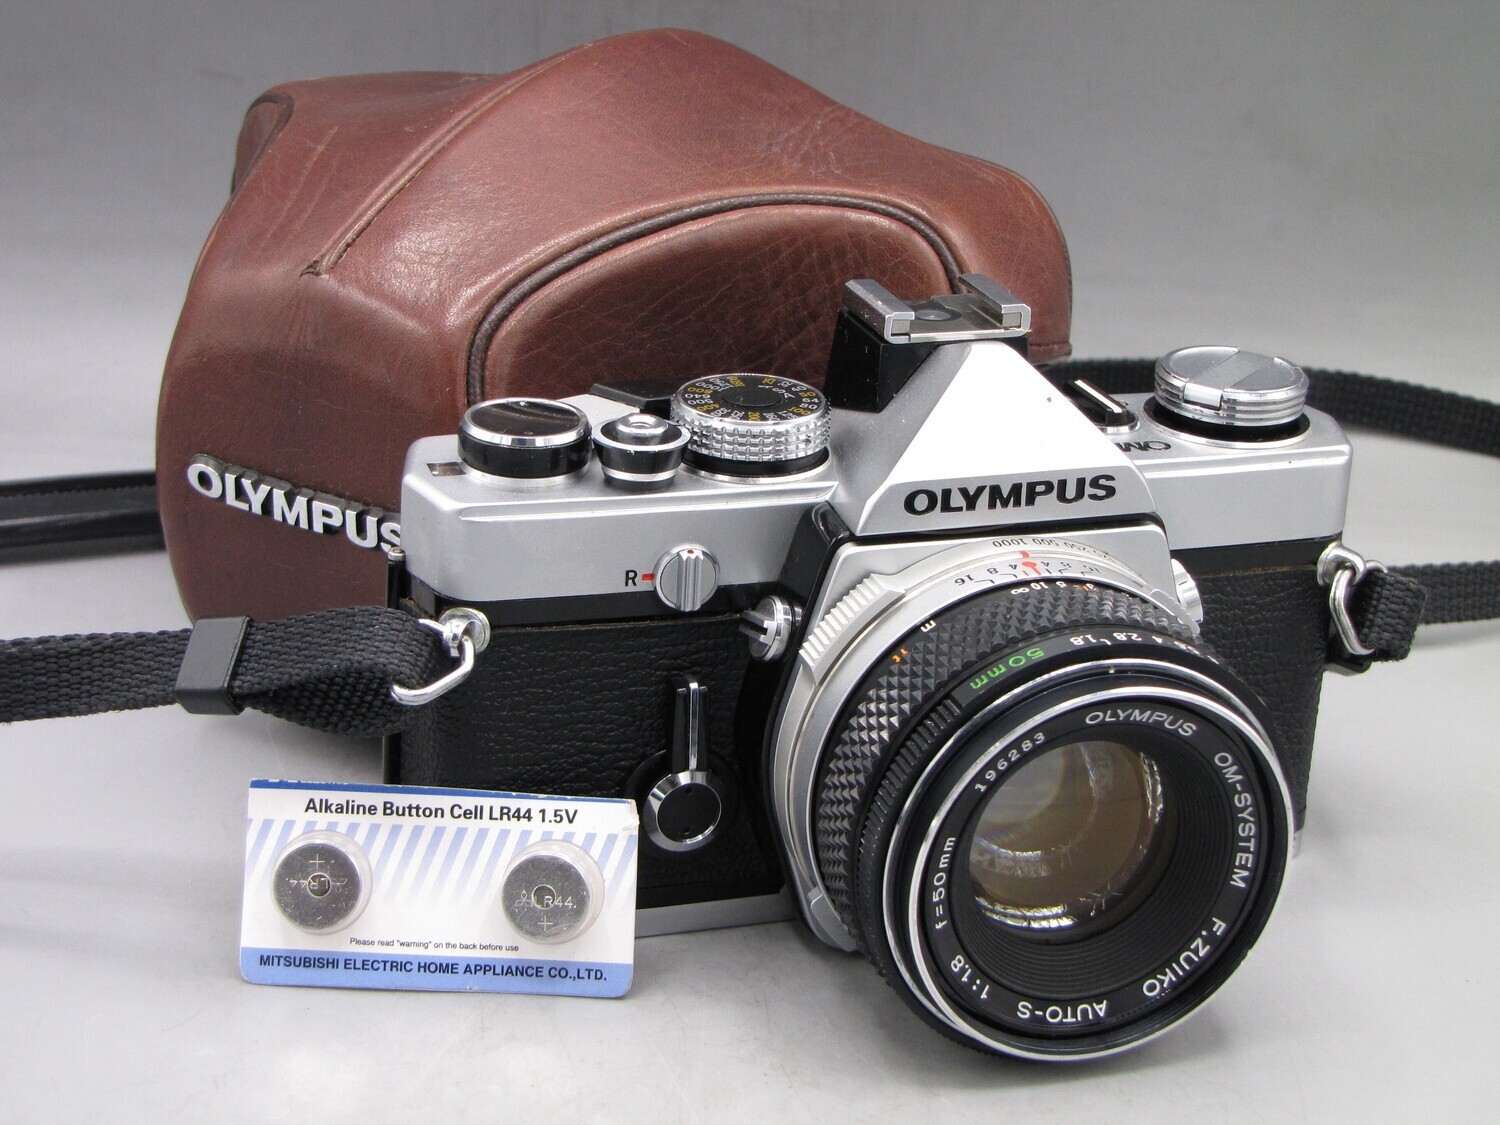 Olympus Om1 35mm SLR Camera 1.8/50 Lens Clad Seals Battery